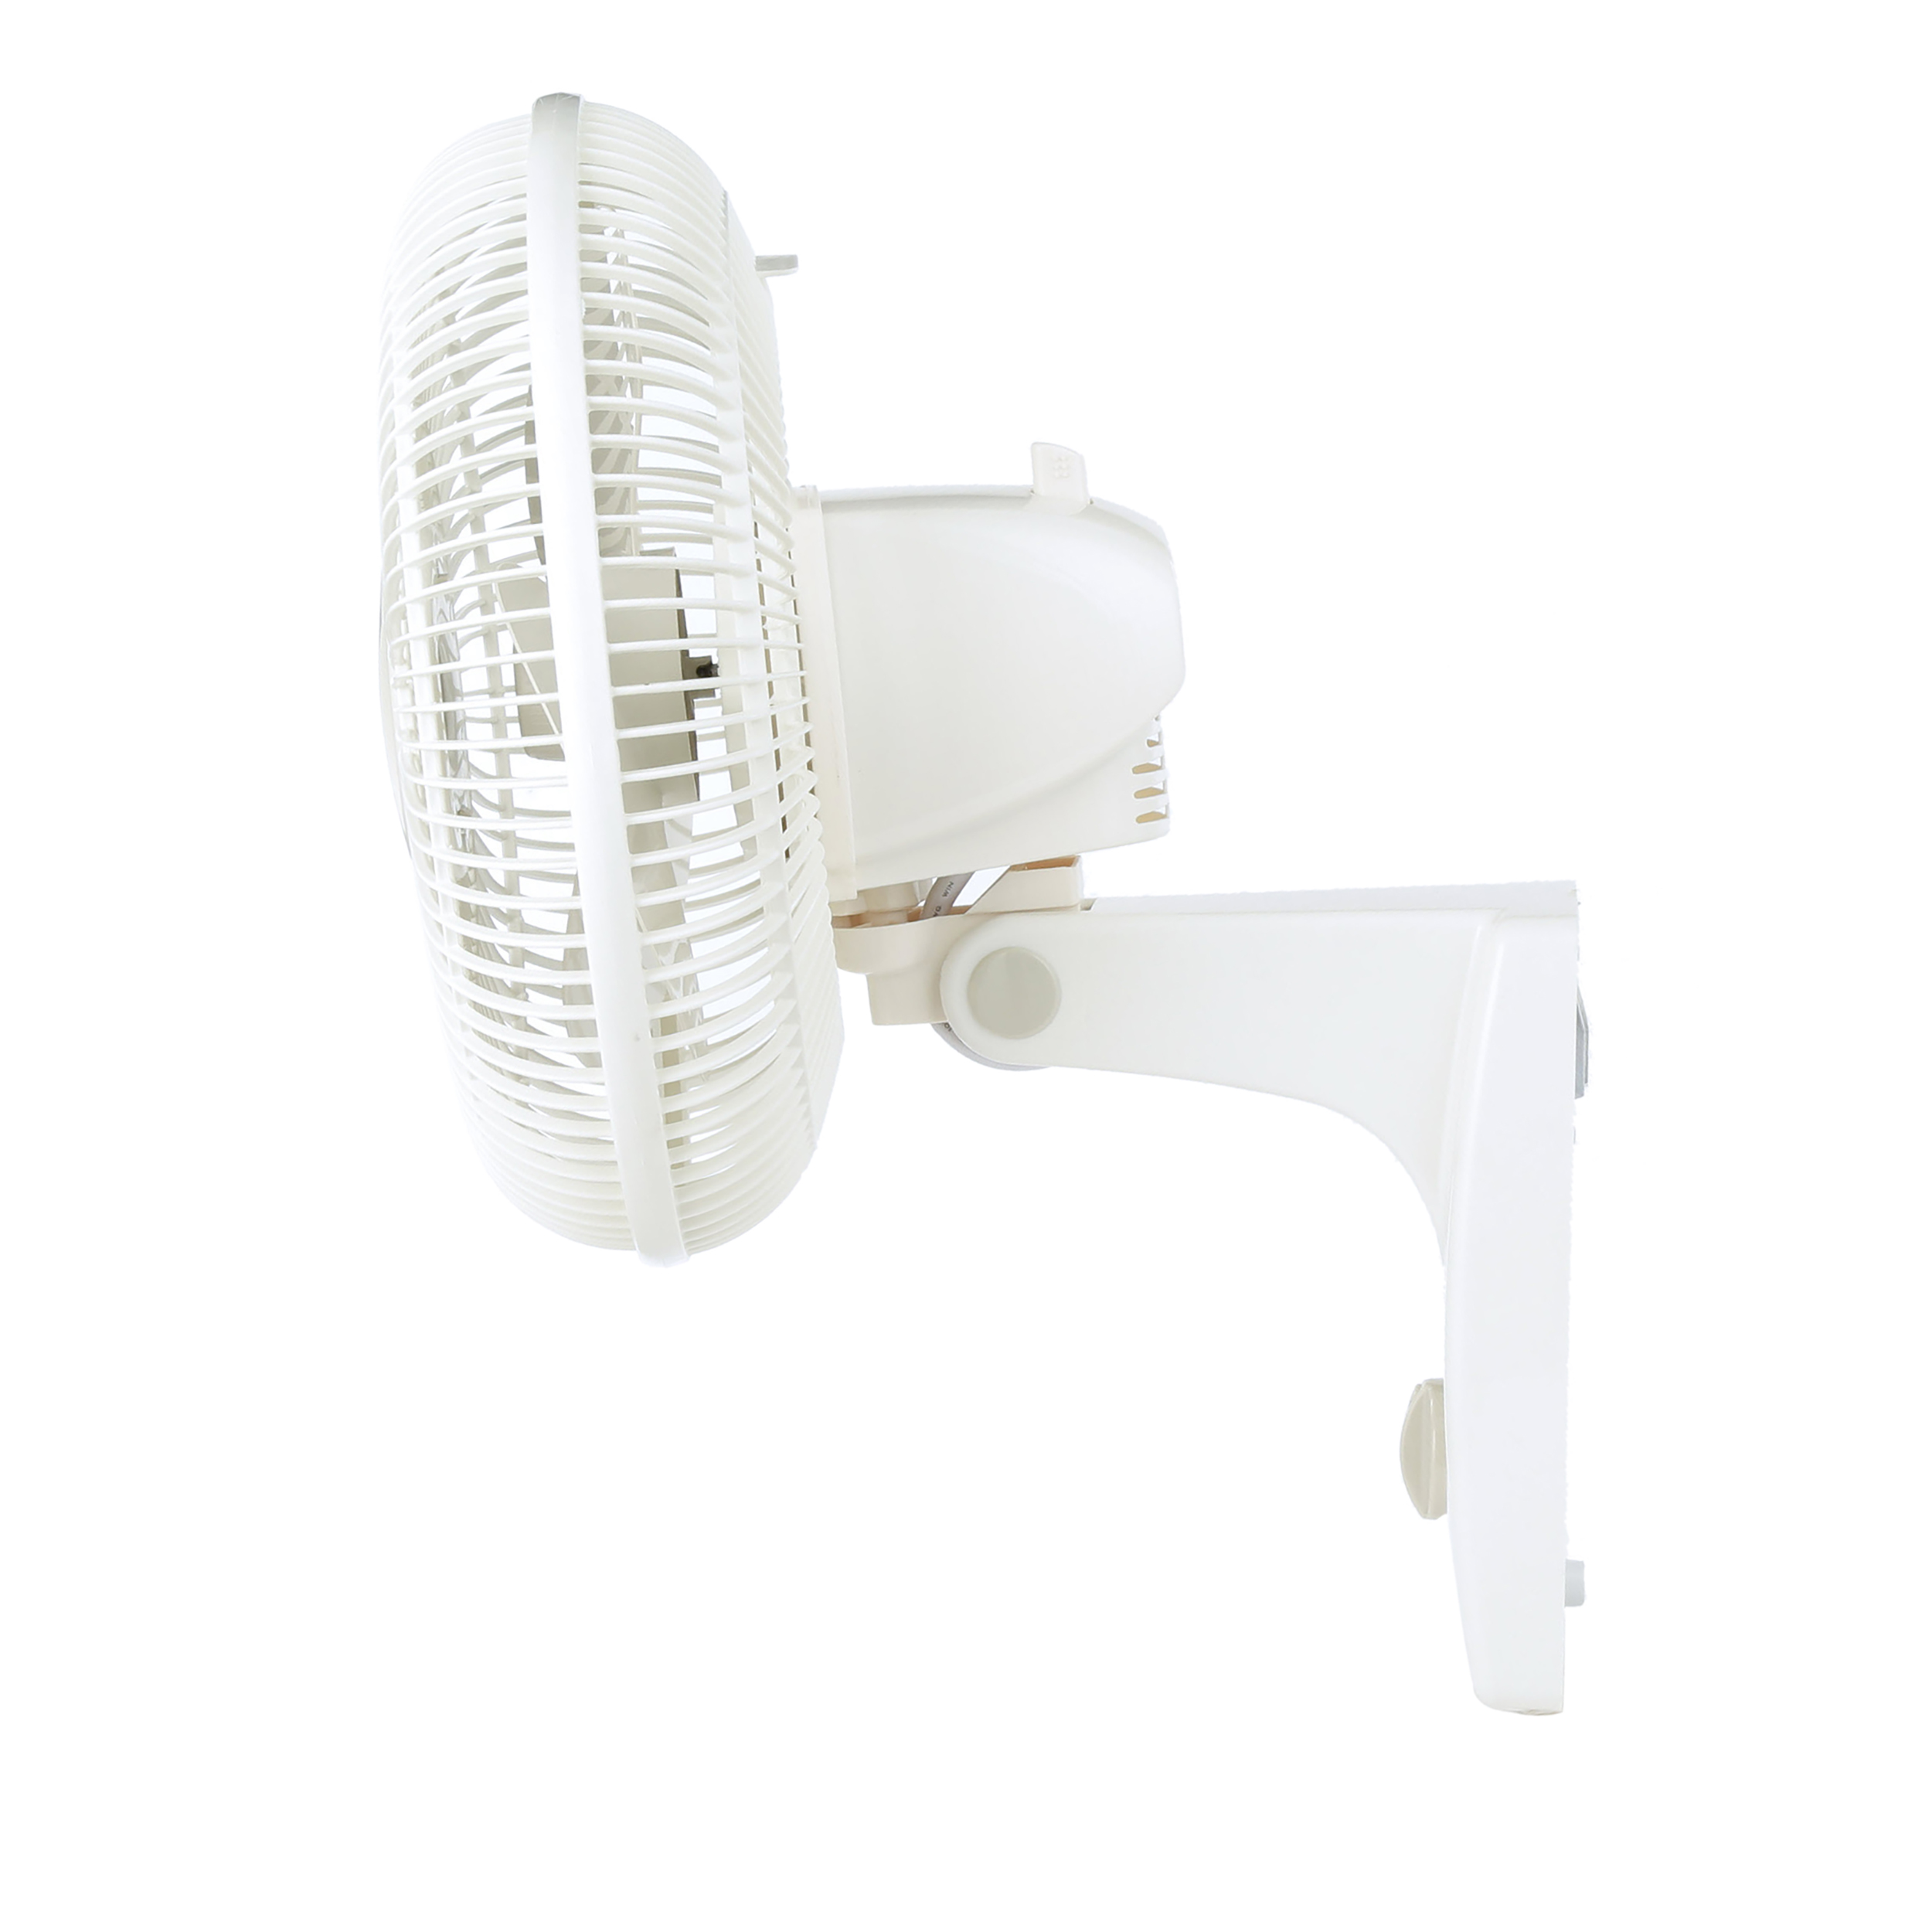 Lasko 12" Oscillating Wall Mount 3-Speed Fan, Model #3012, White - image 4 of 9